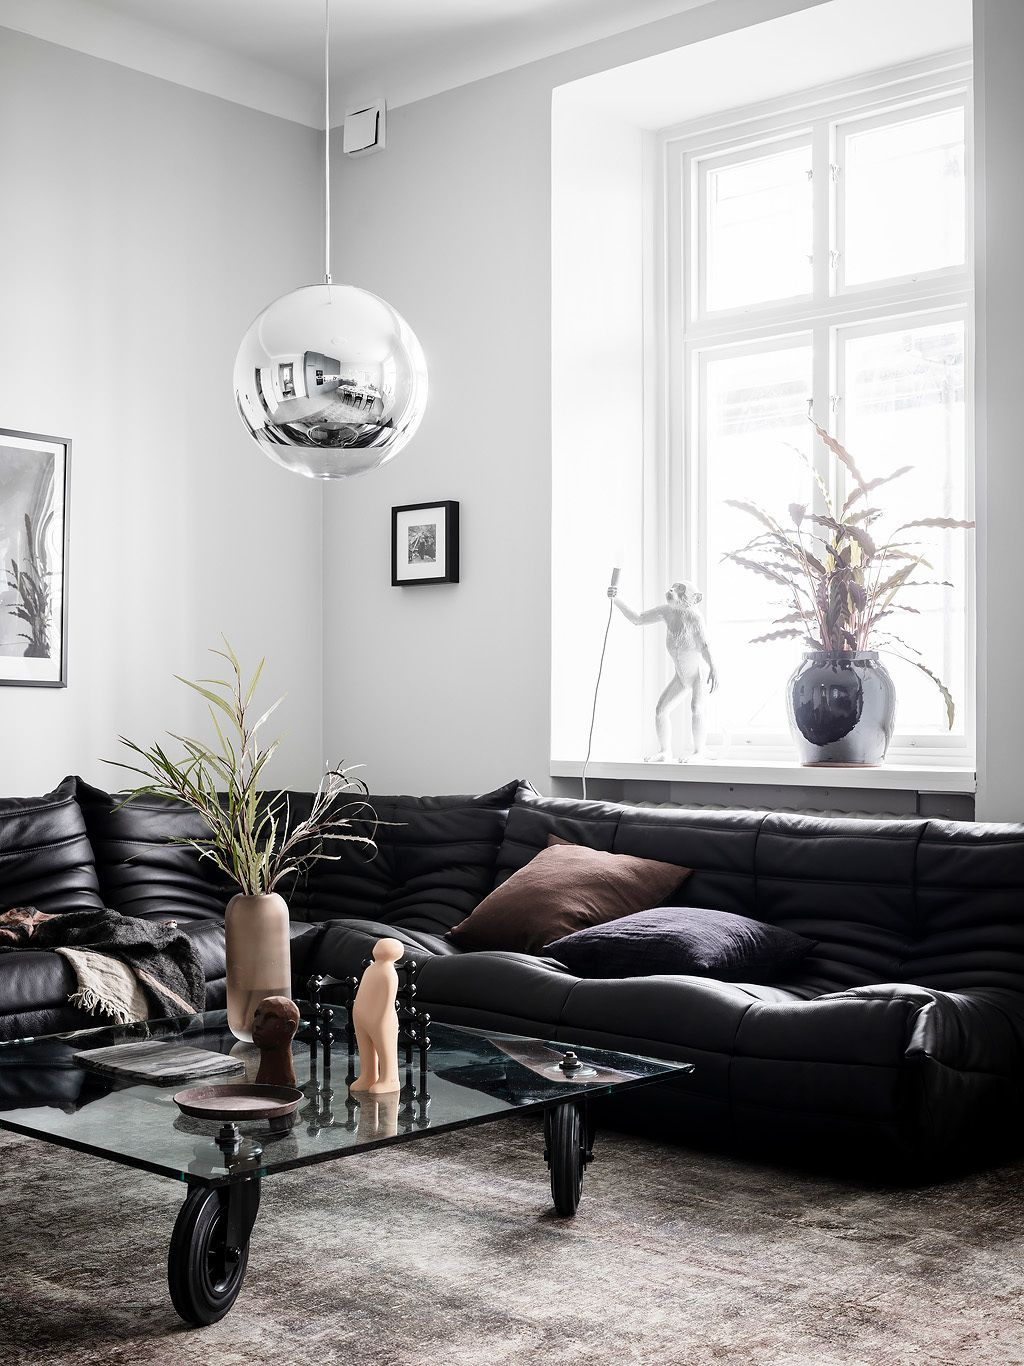 Un Canapé D'angle Au Design Iconique Dans Un Appartement ... concernant Canaps D Angle Decore